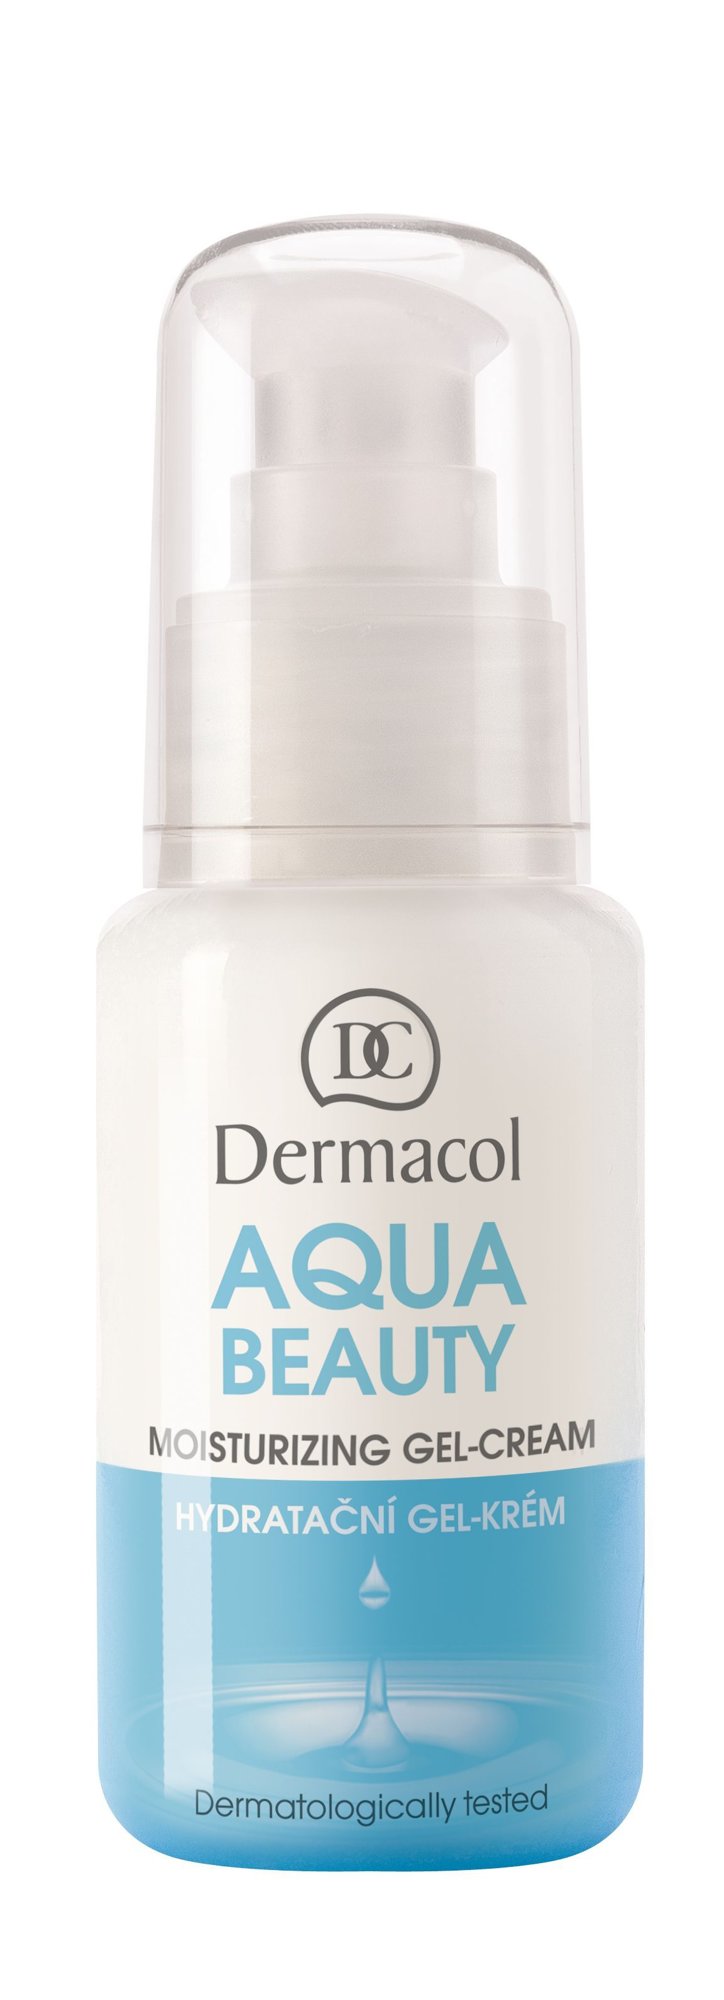 Dermacol Aqua Beauty 50ml veido gelis